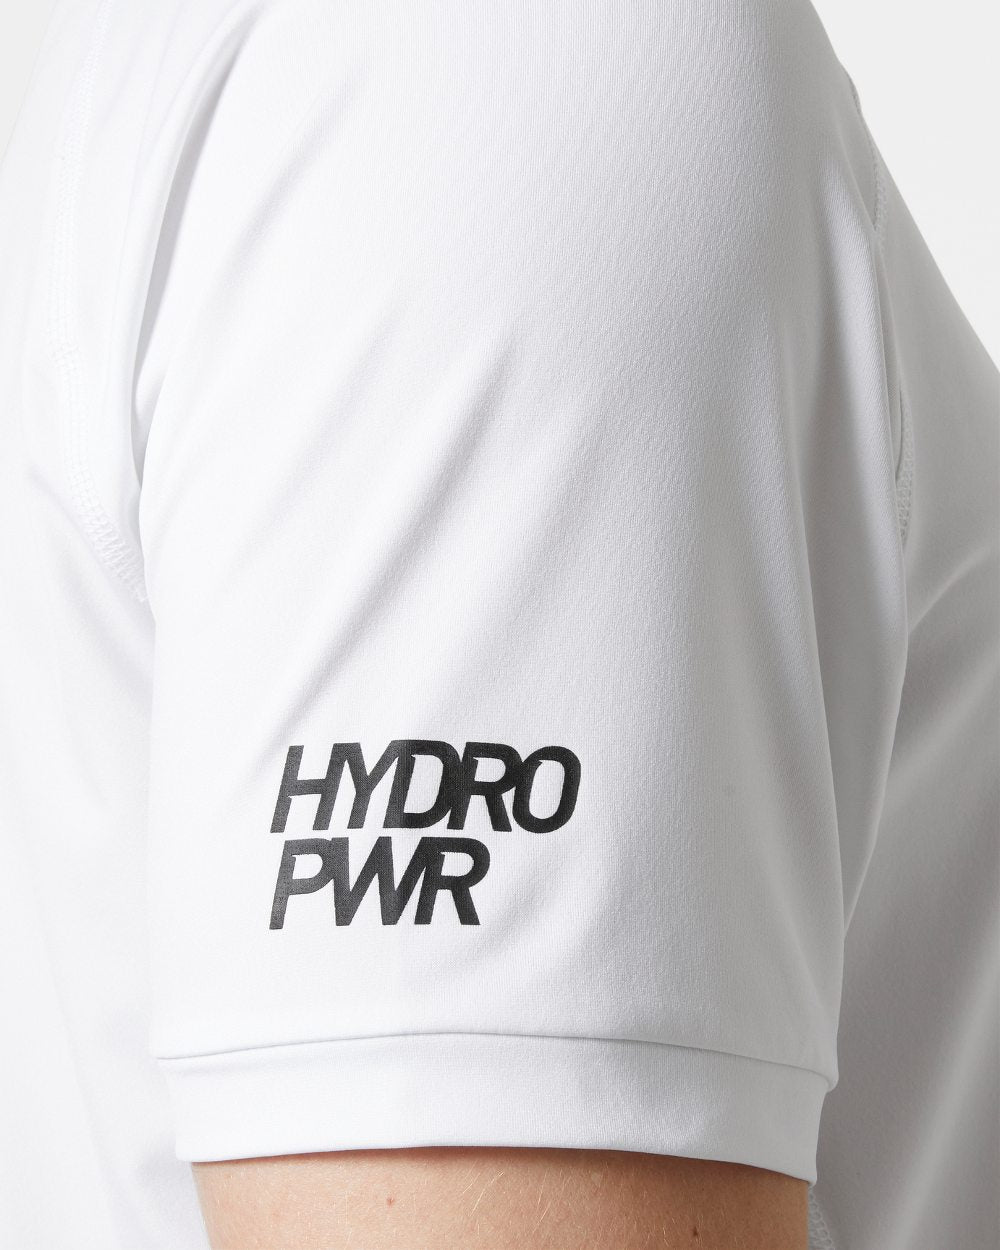 White coloured Helly Hansen Mens HP Ocean T-Shirt 2.0 on white background 